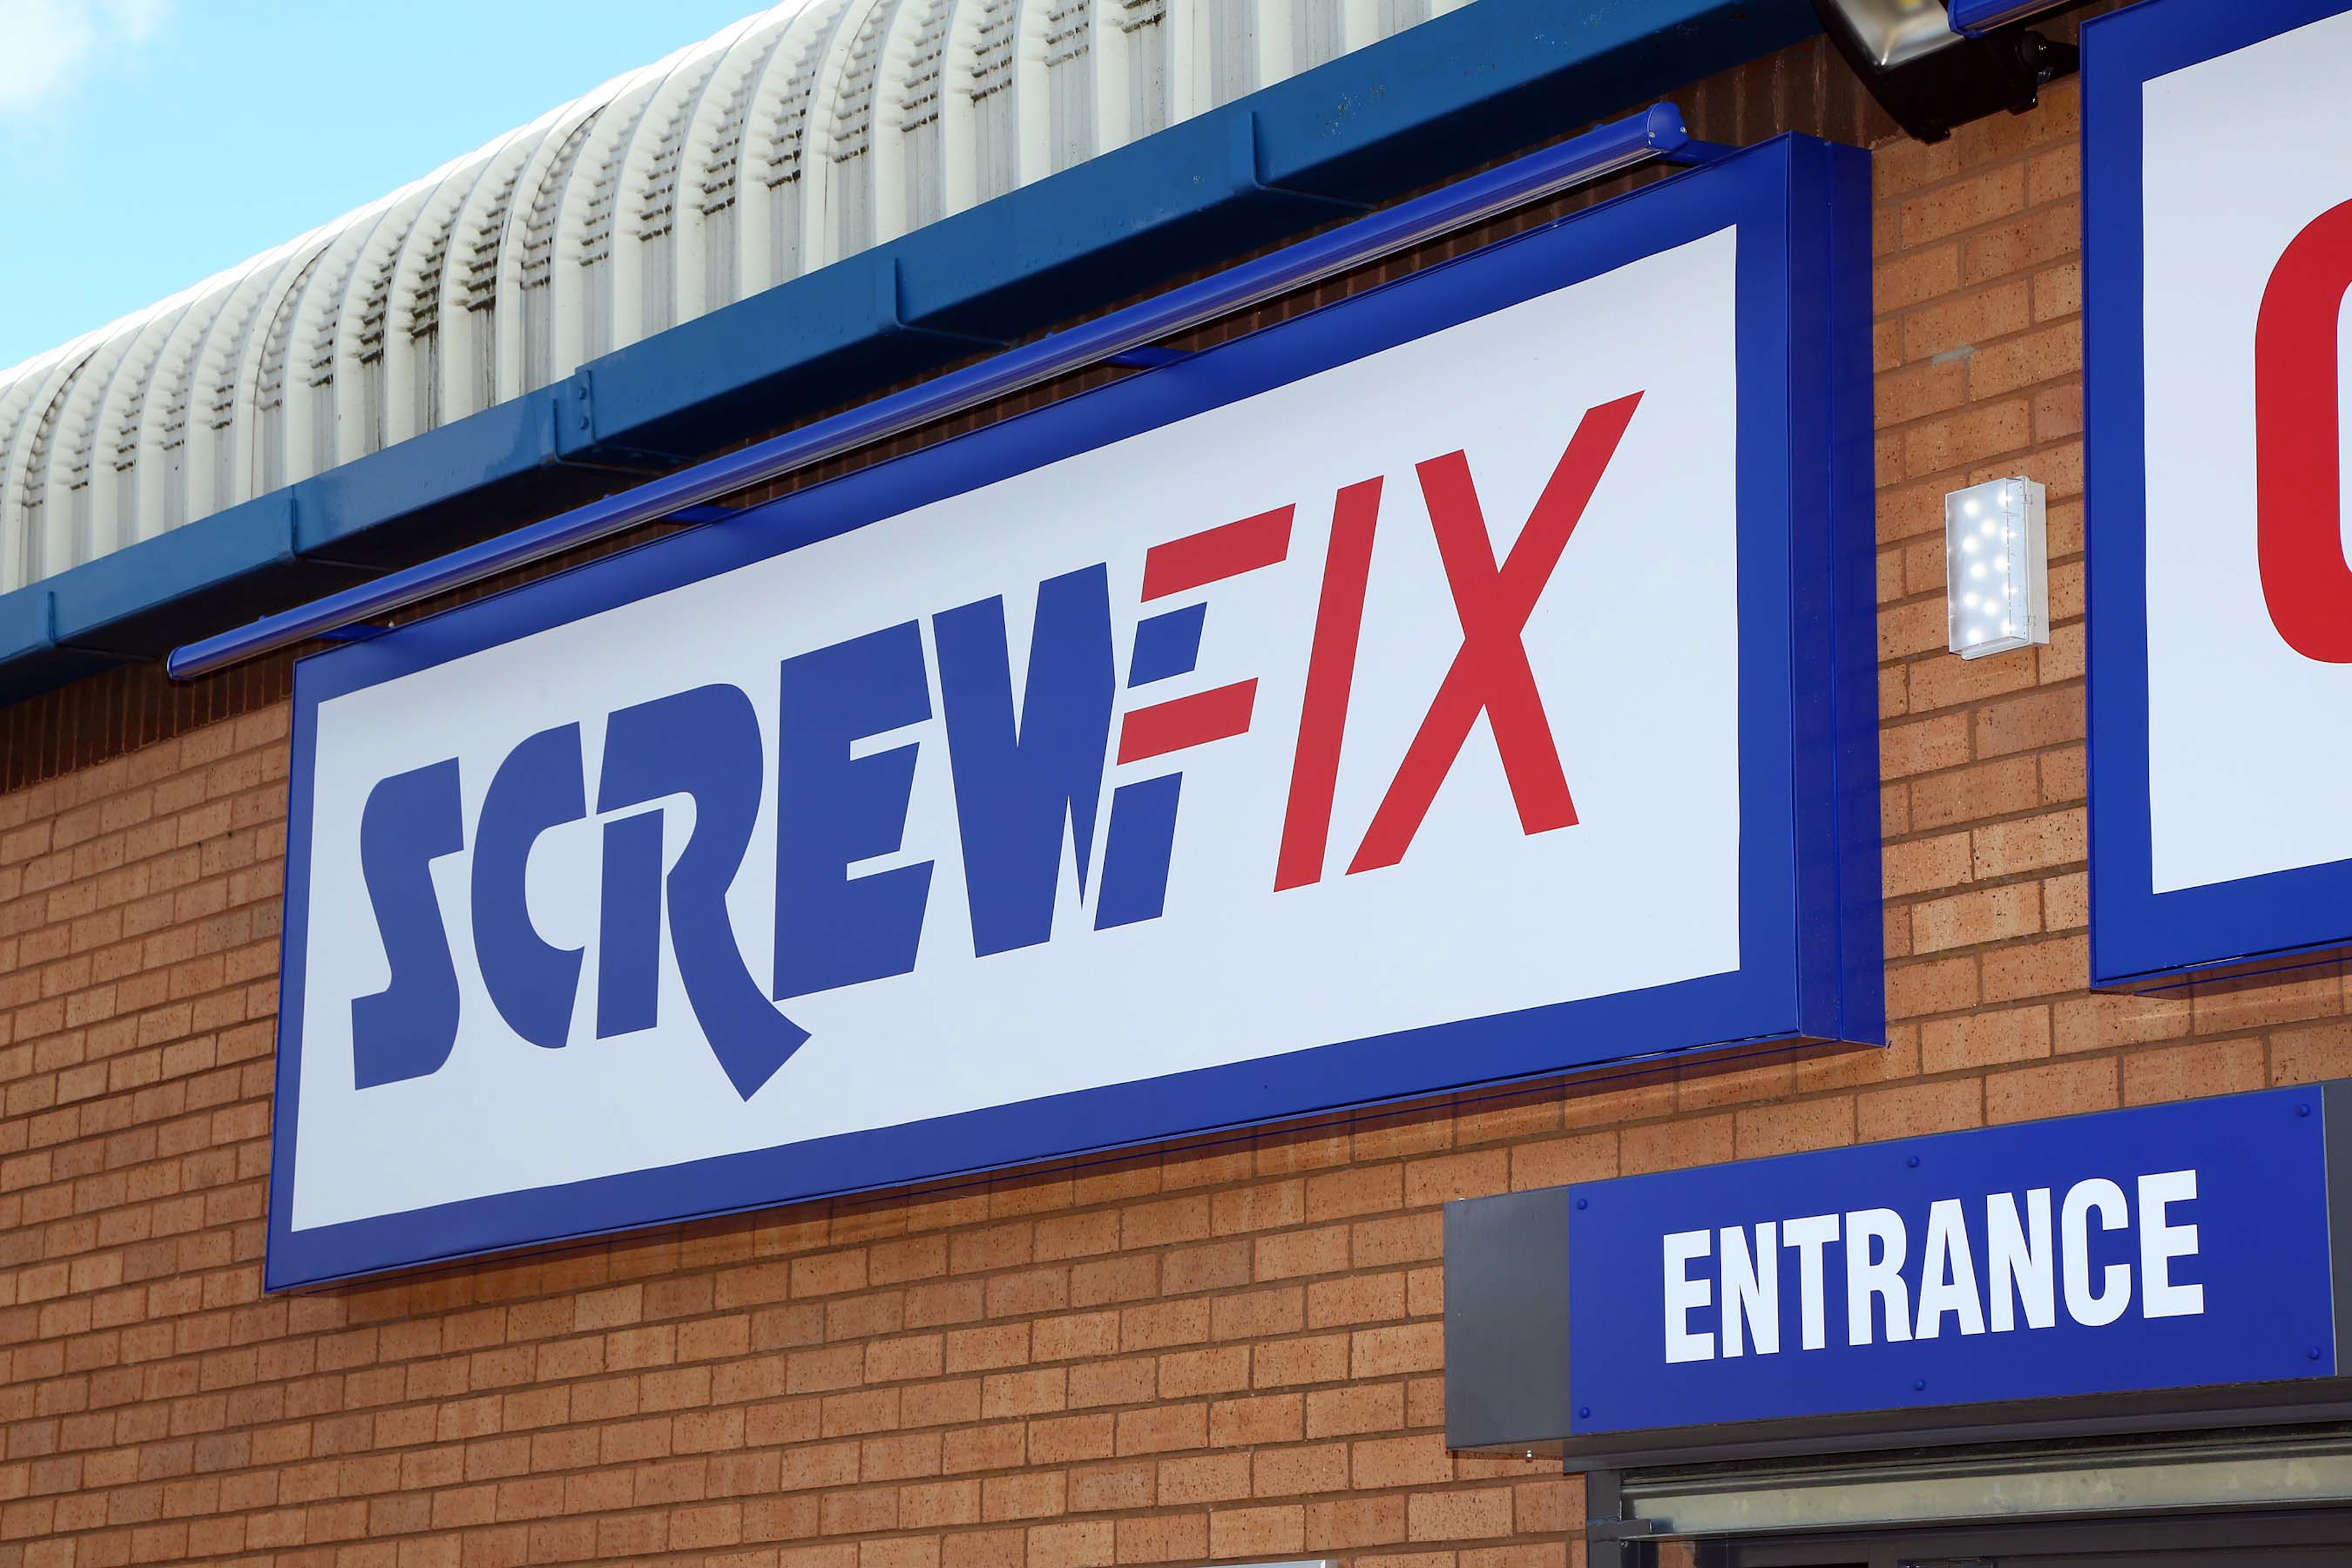 Screwfix to create 16 new jobs in Lewisham